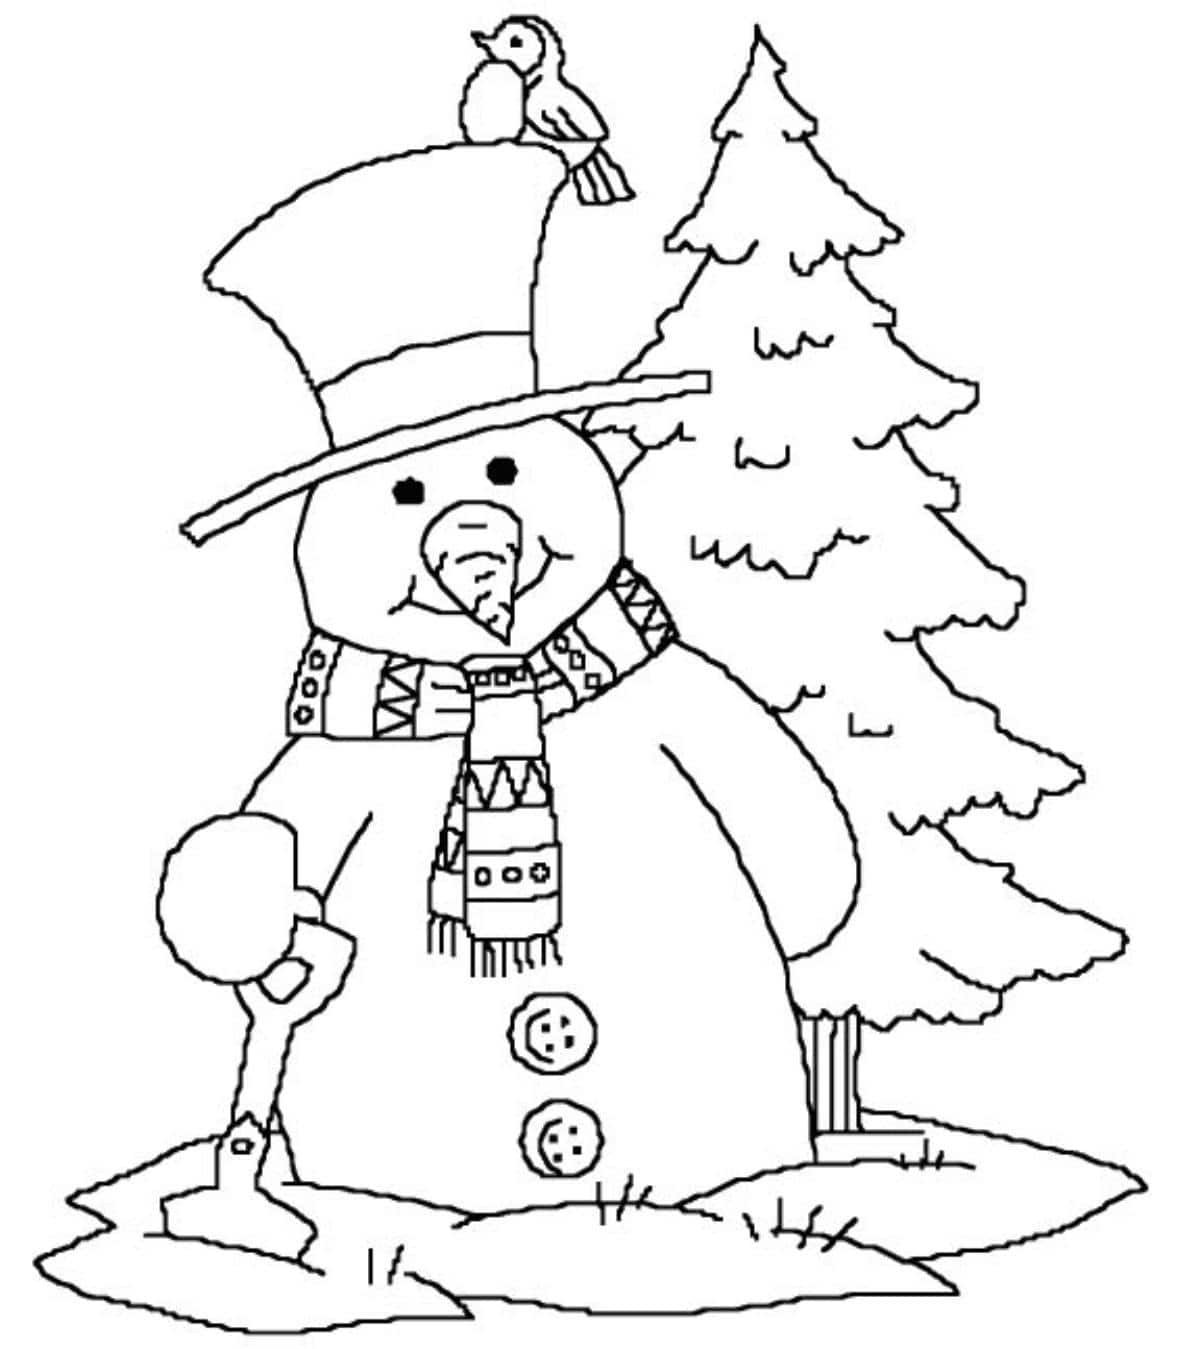 Новогодние раскраски для детей Снеговик